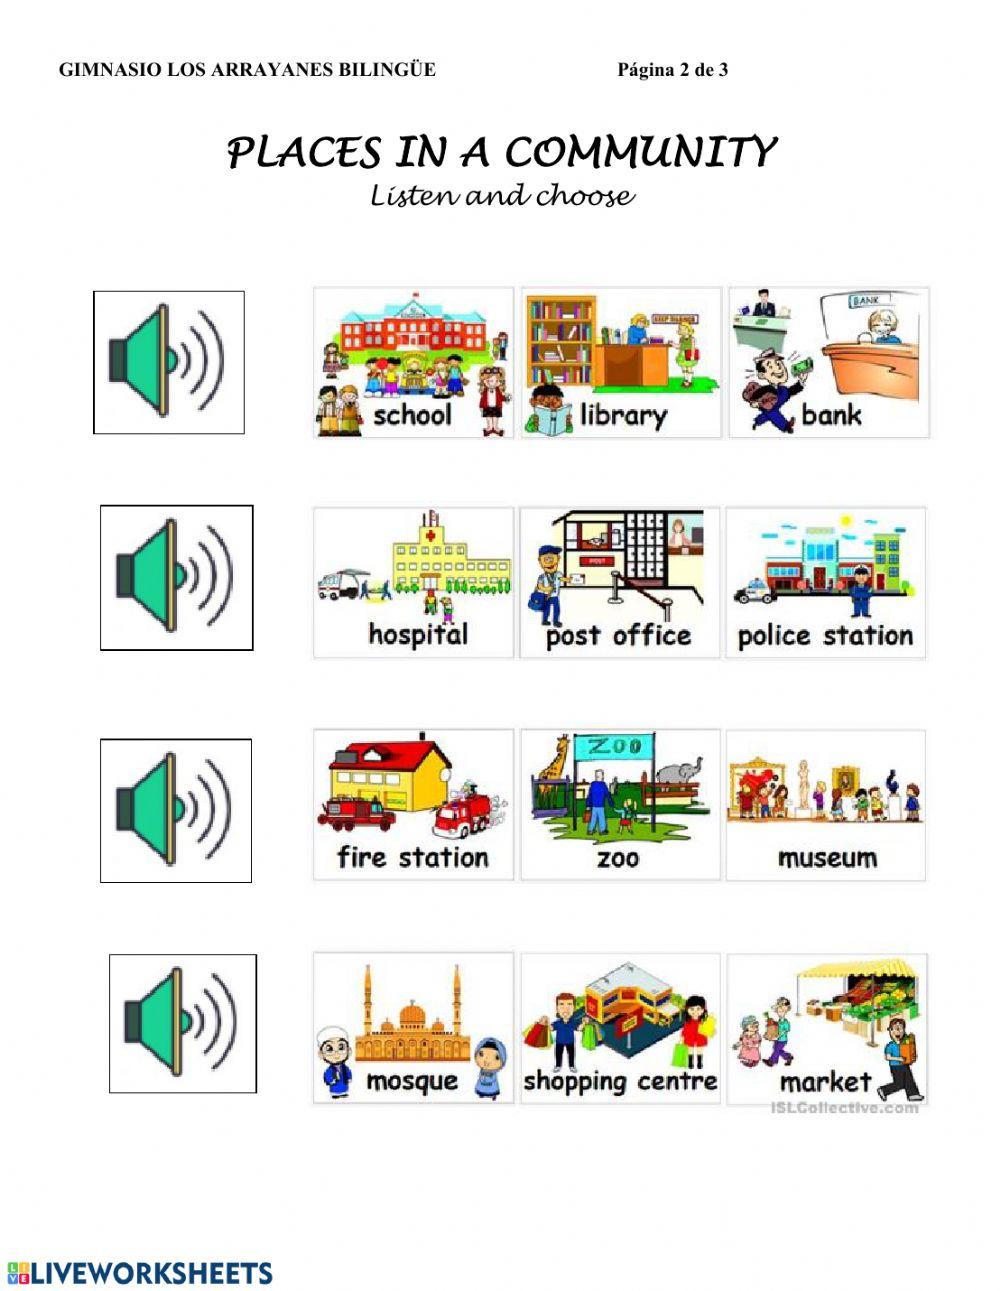 Community places